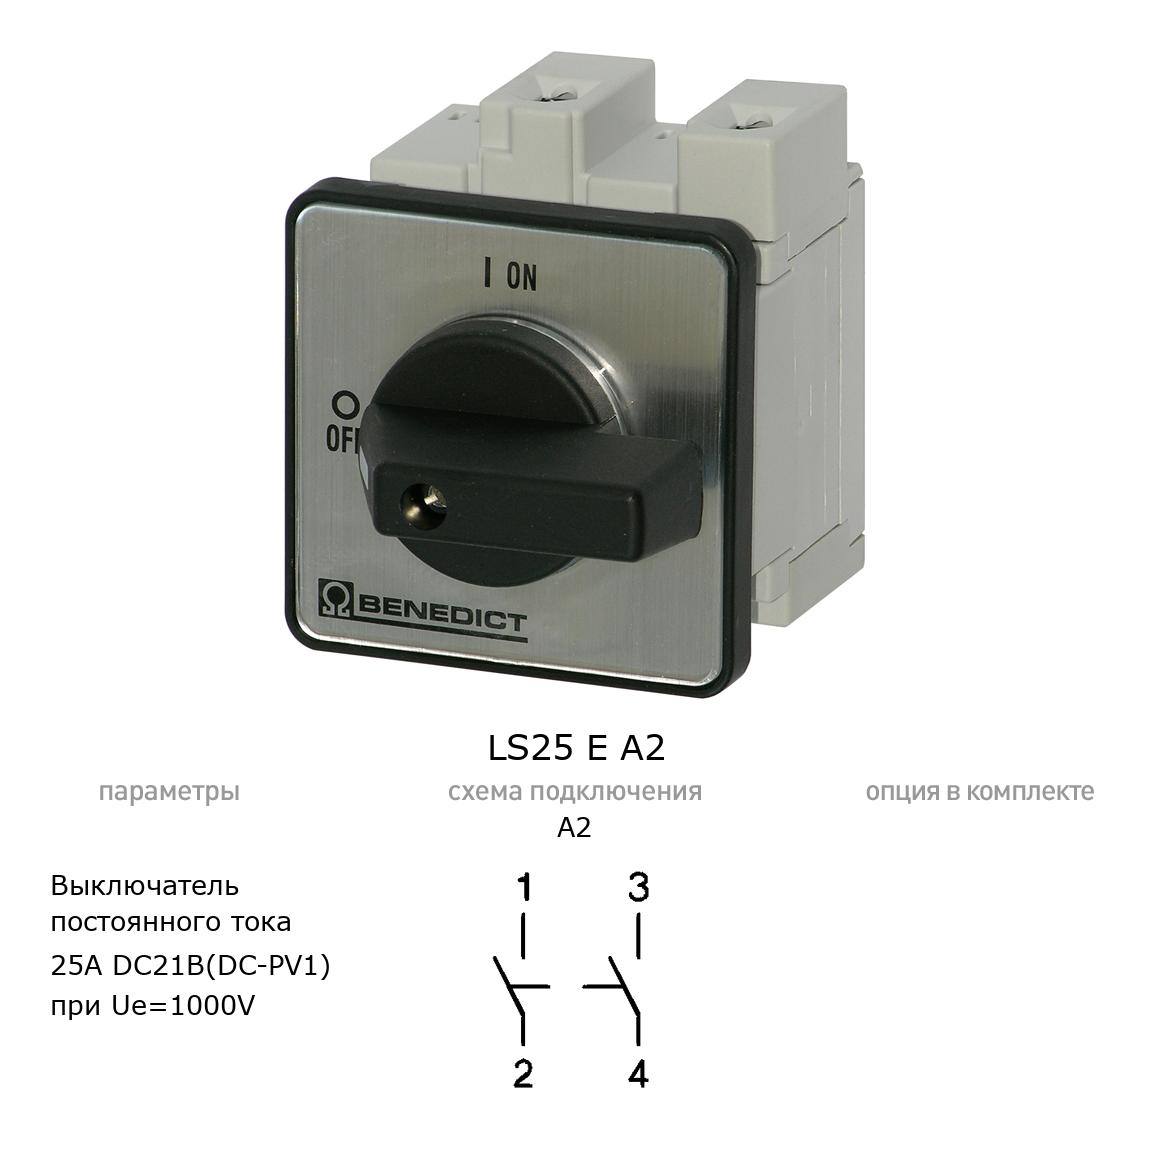 Кулачковый переключатель для постоянного тока (DC) LS25 E A2 BENEDICT